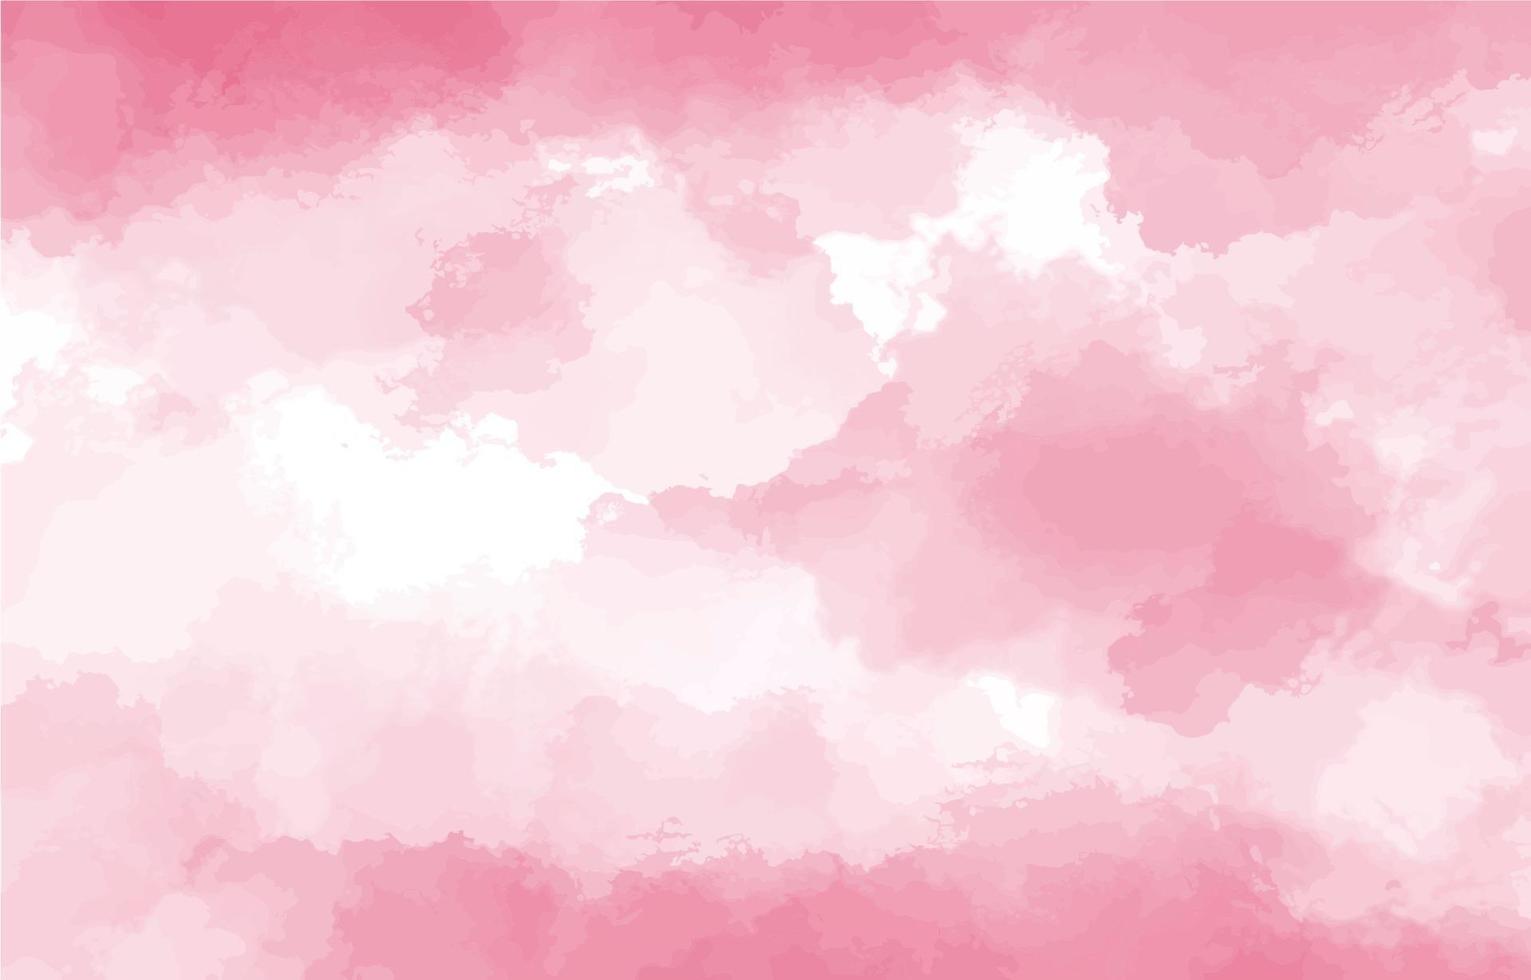 Pink waterclor texture background vector